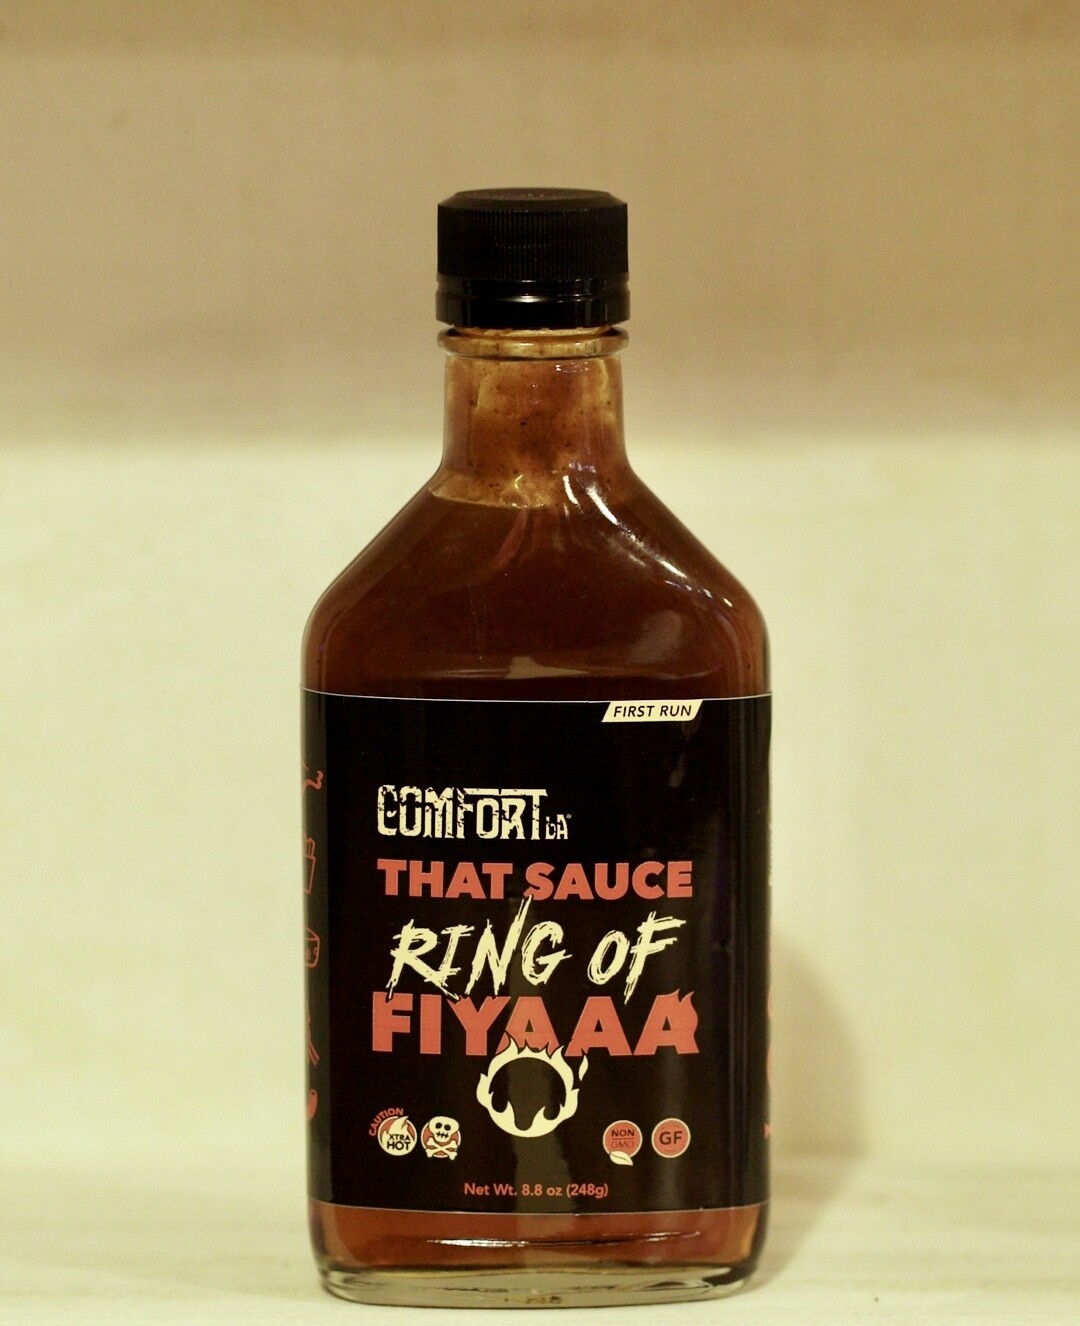 "That Sauce" Ring of Fiyaaa